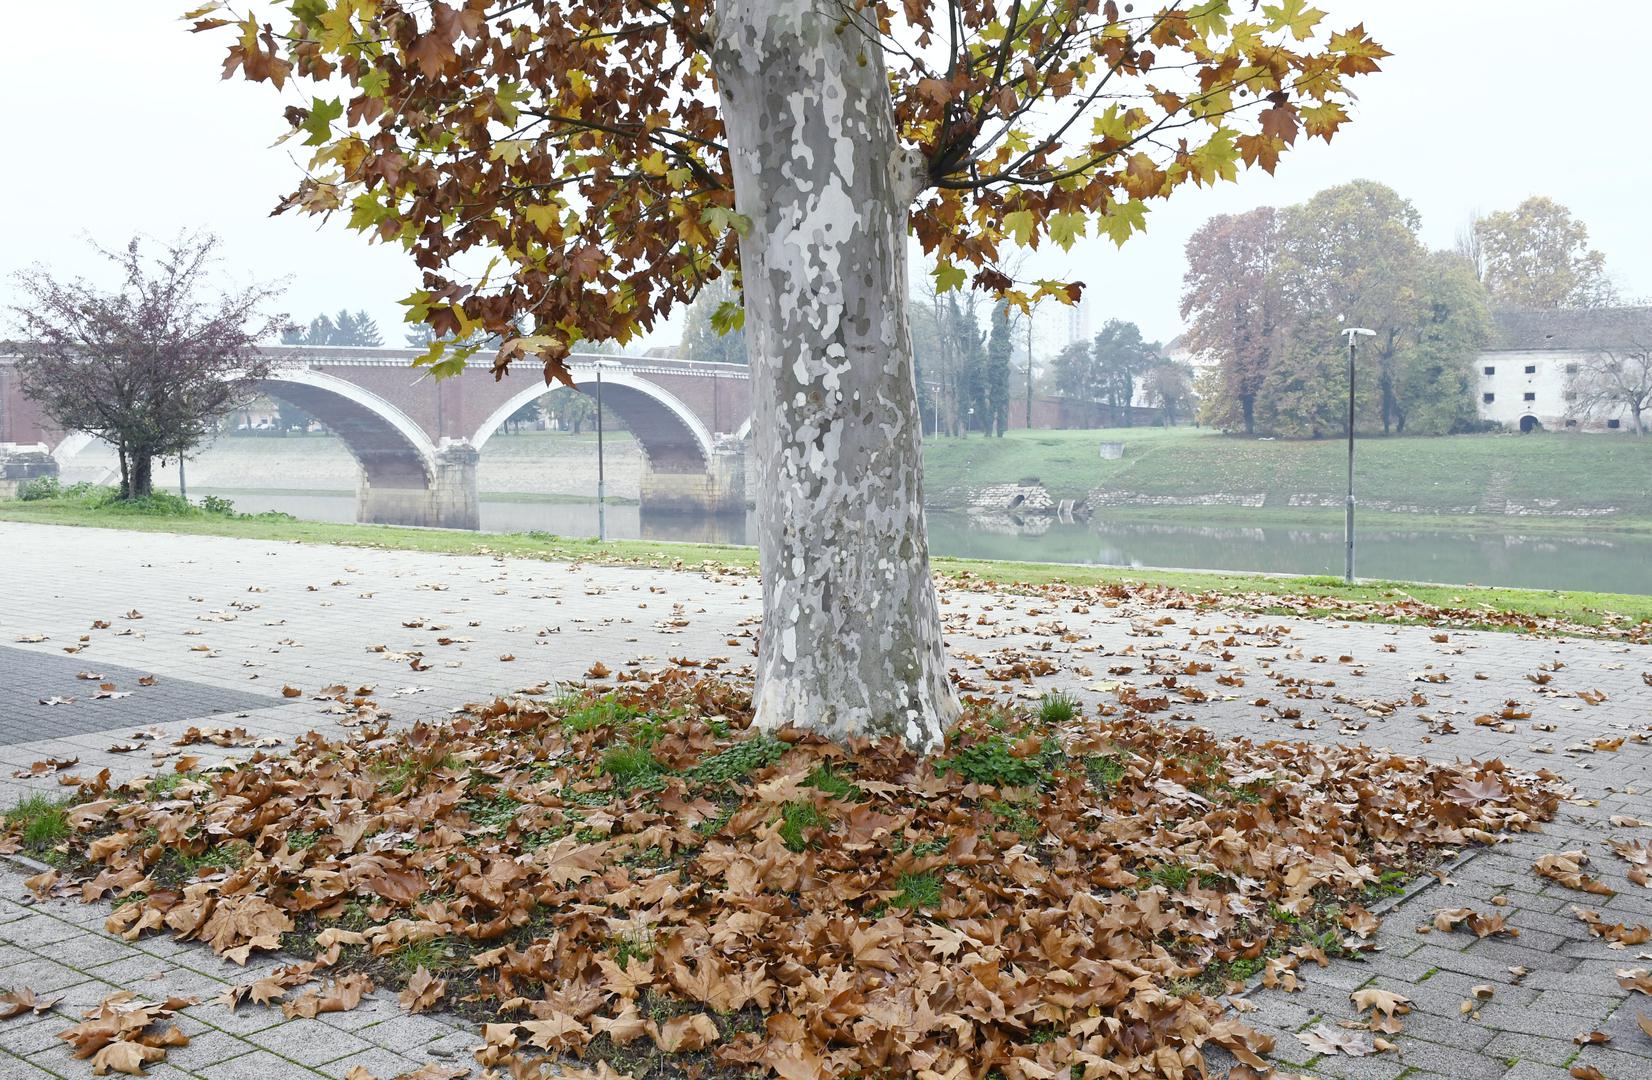 Listopad - Mjesec listopad obično obilježava početak jeseni, kada lišće počinje mijenjati boje i otpadati s drveća. Pučki naziv nastao je stoga prema razdoblju padanja lišća.